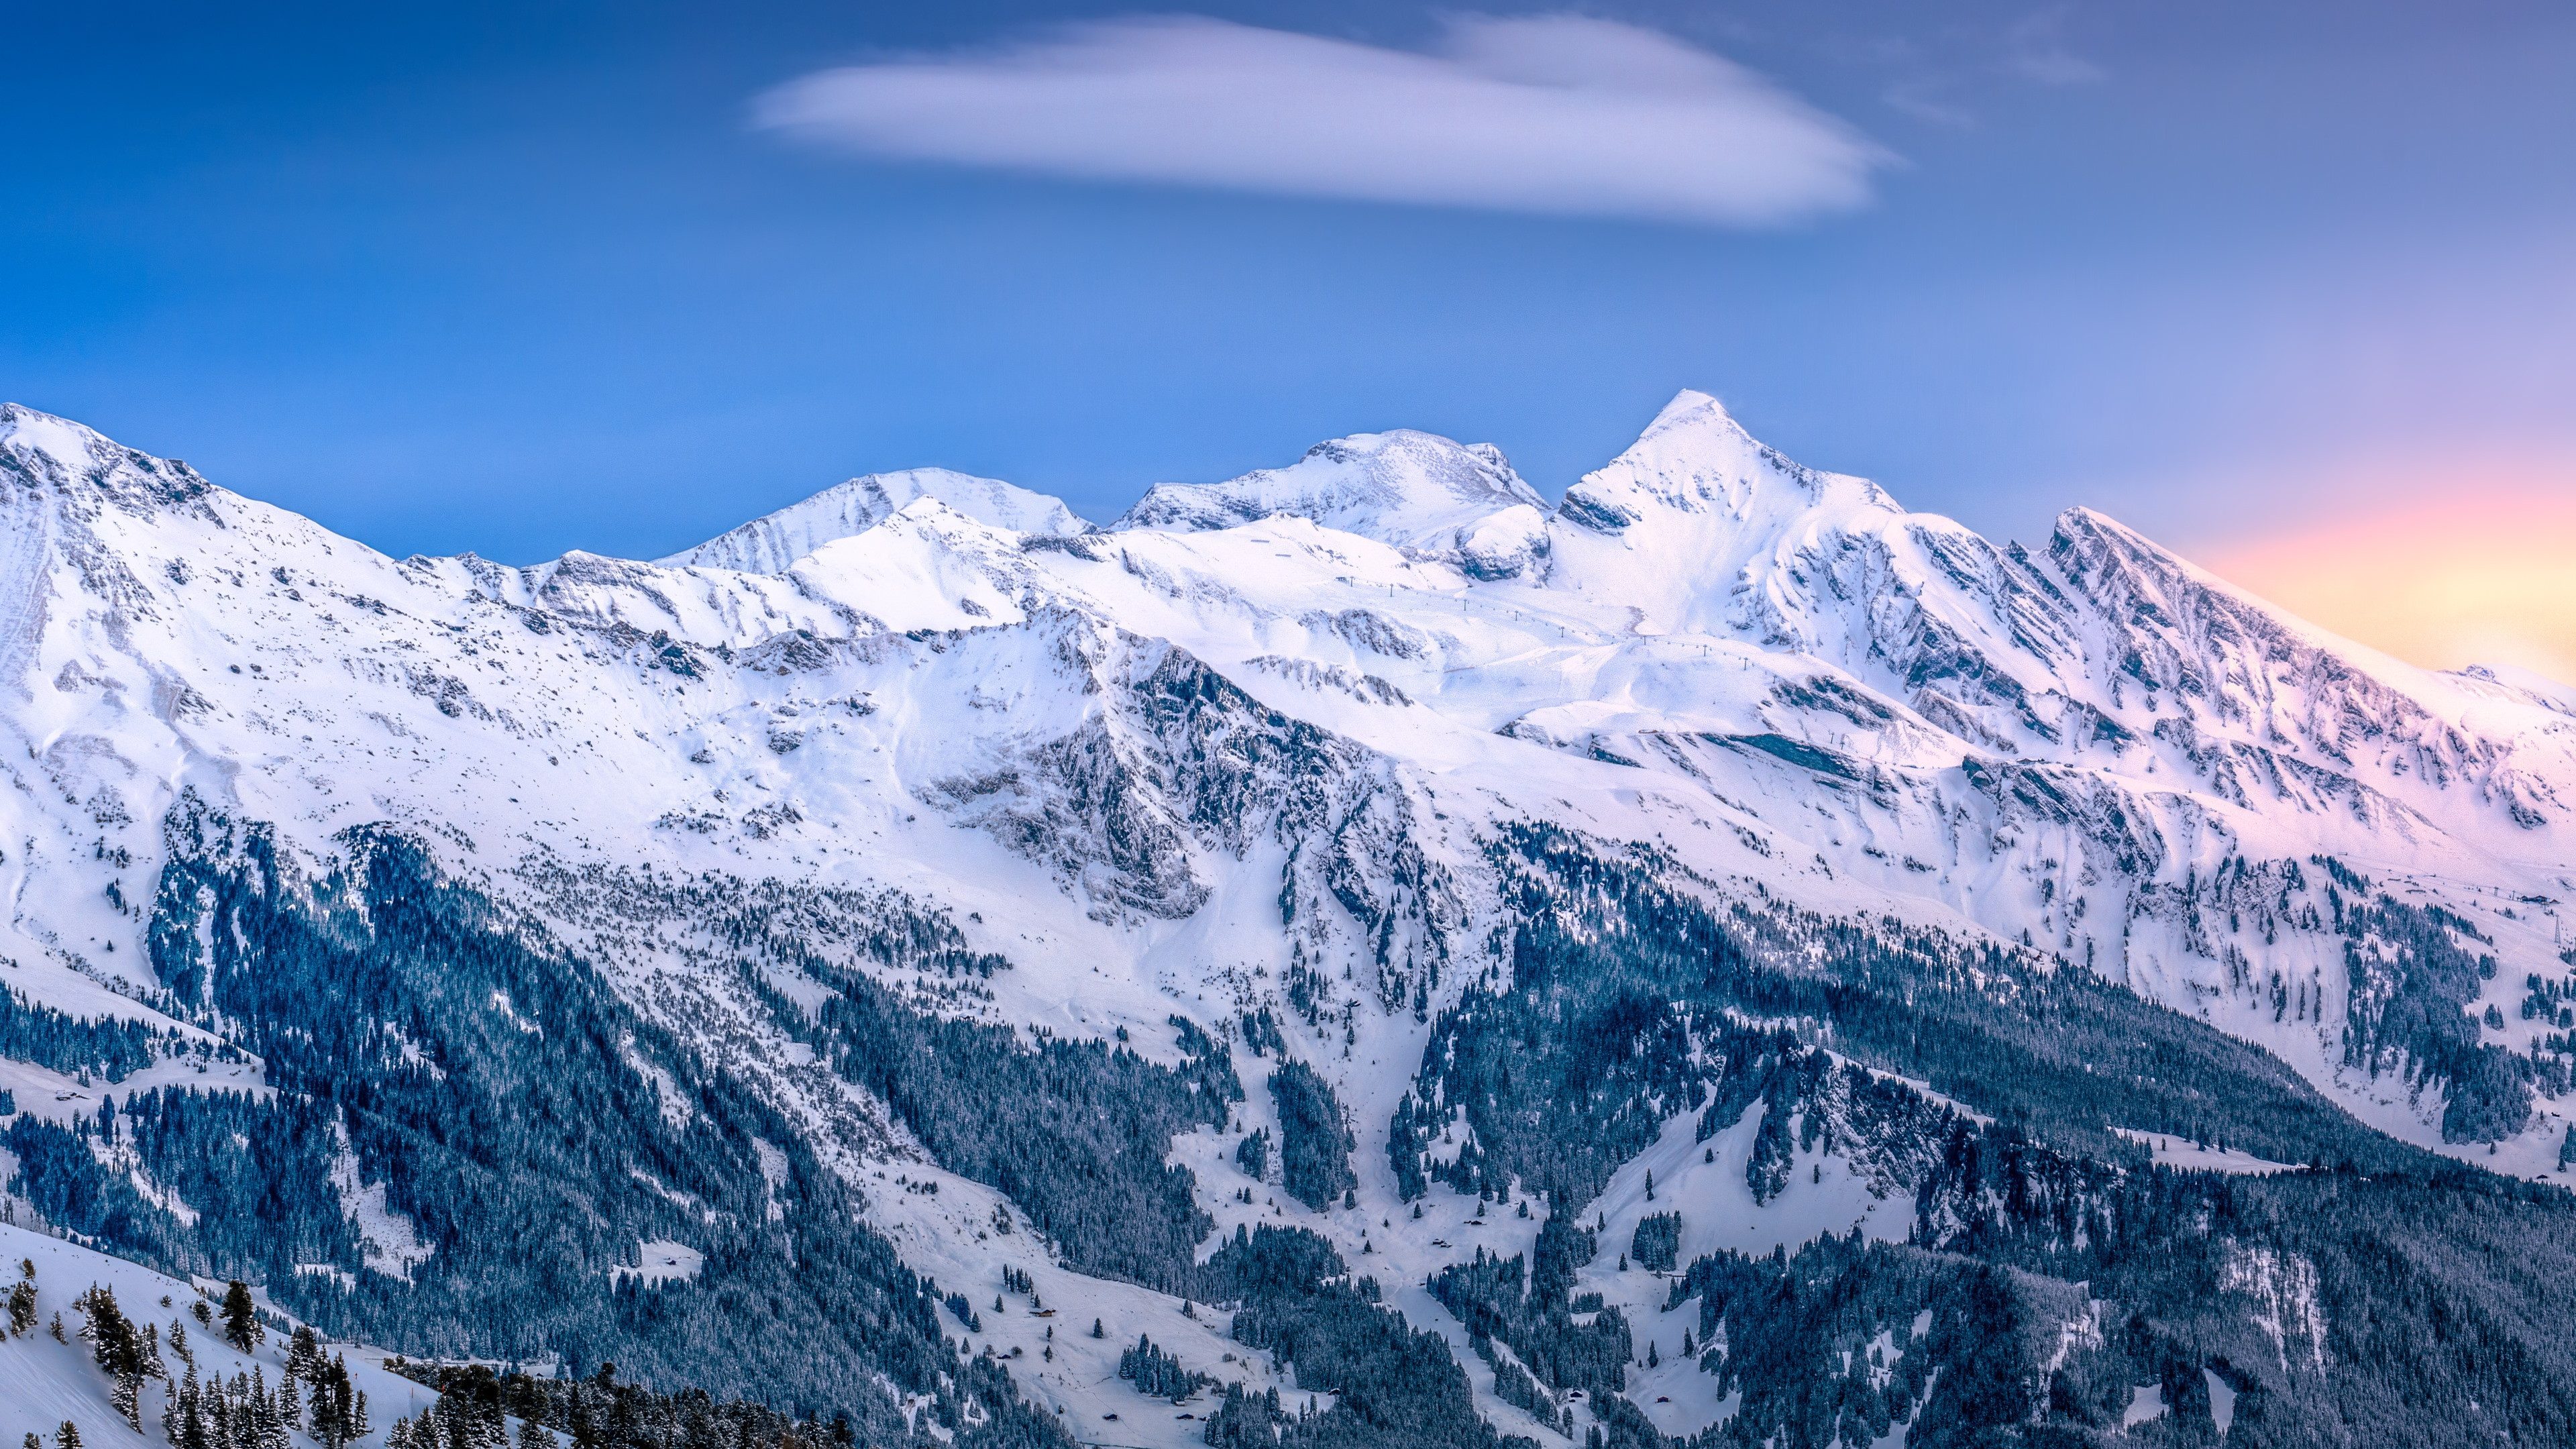 Alpine scenery from Kleine Scheidegg, Switzerland wallpaper 3840x2160